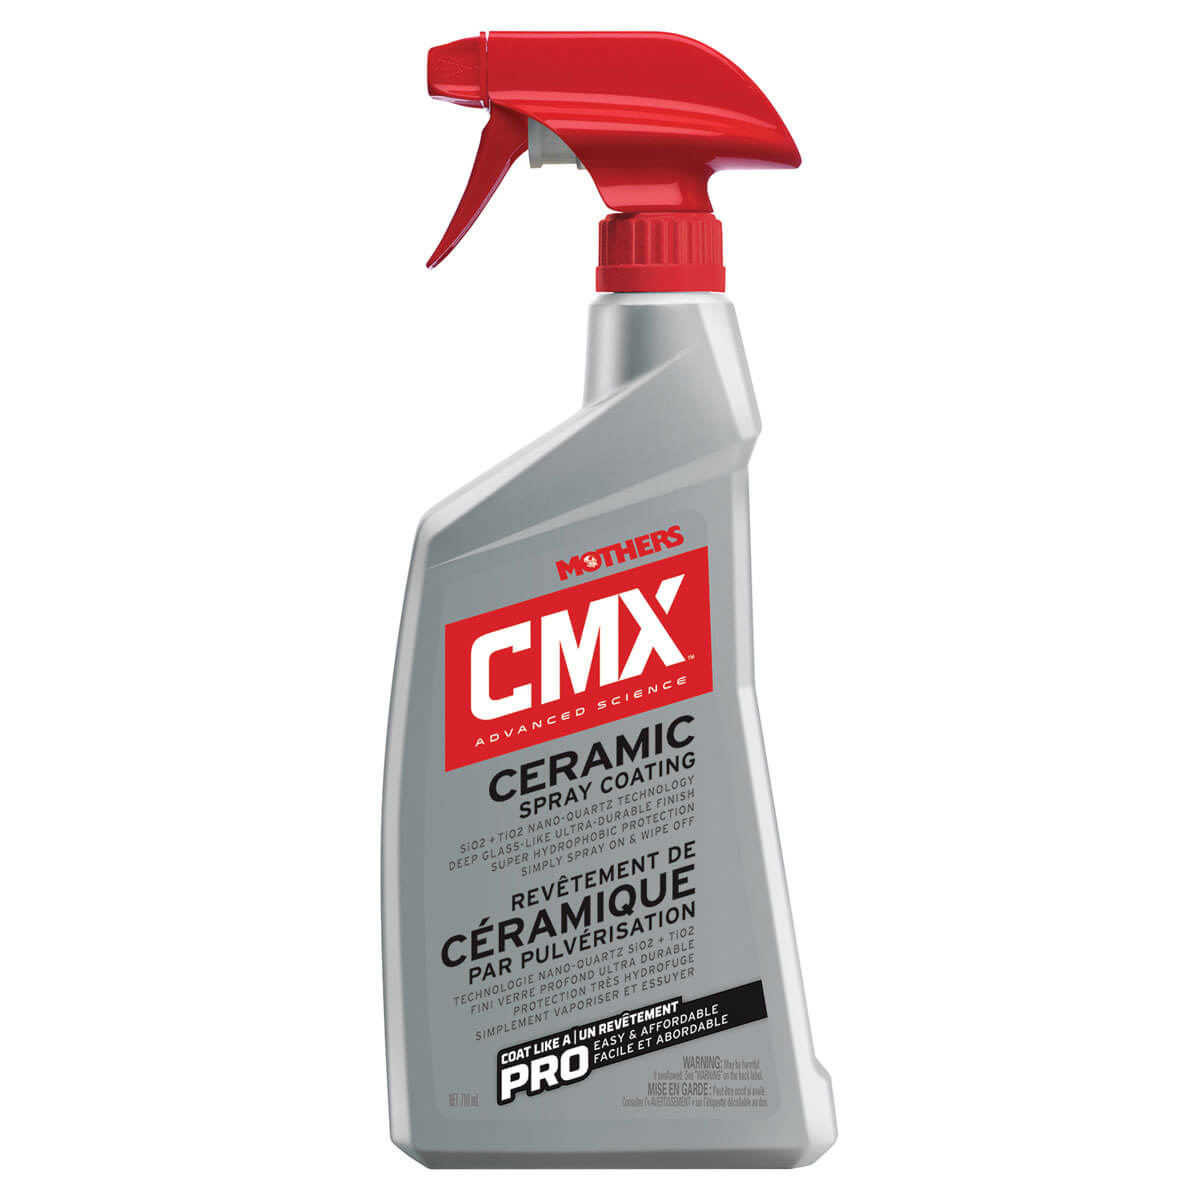 CMX Ceramic Spray Coating - 24 oz